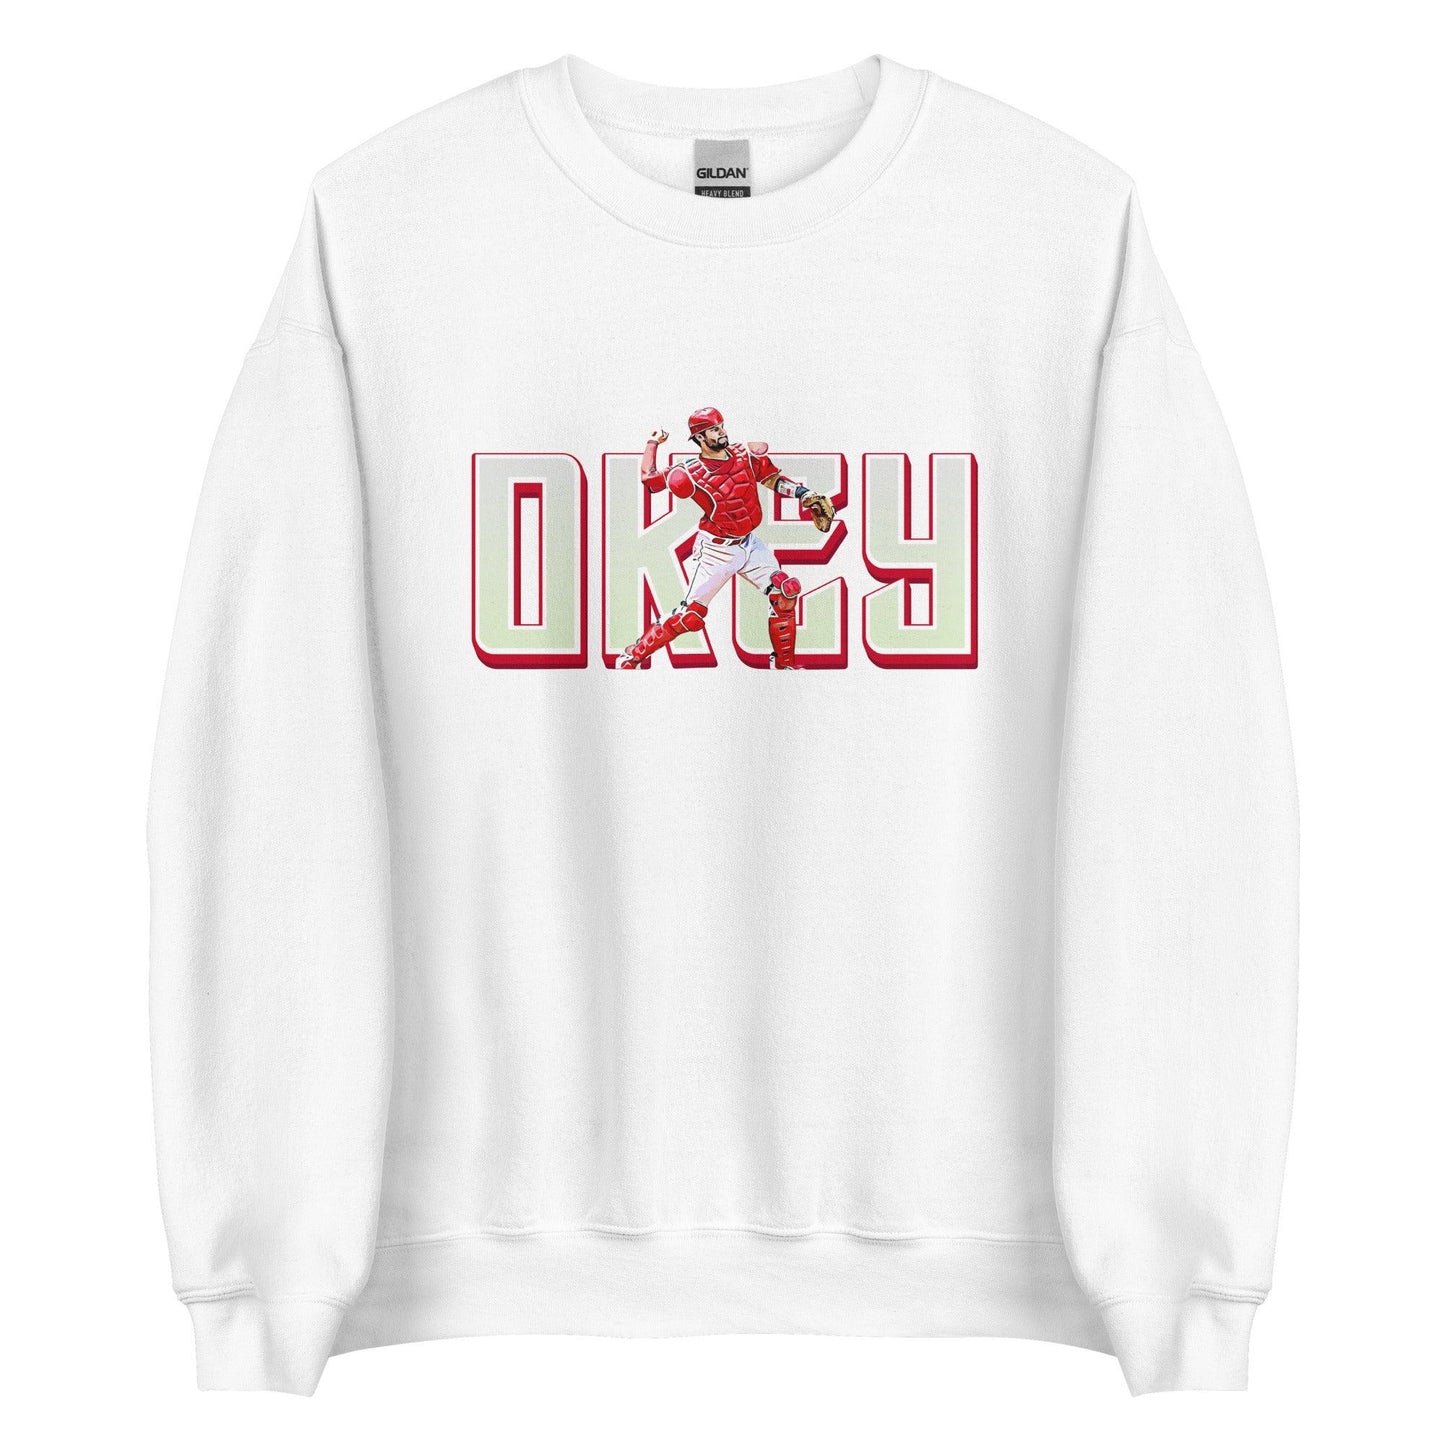 Chris Okey "Pick Off" Sweatshirt - Fan Arch